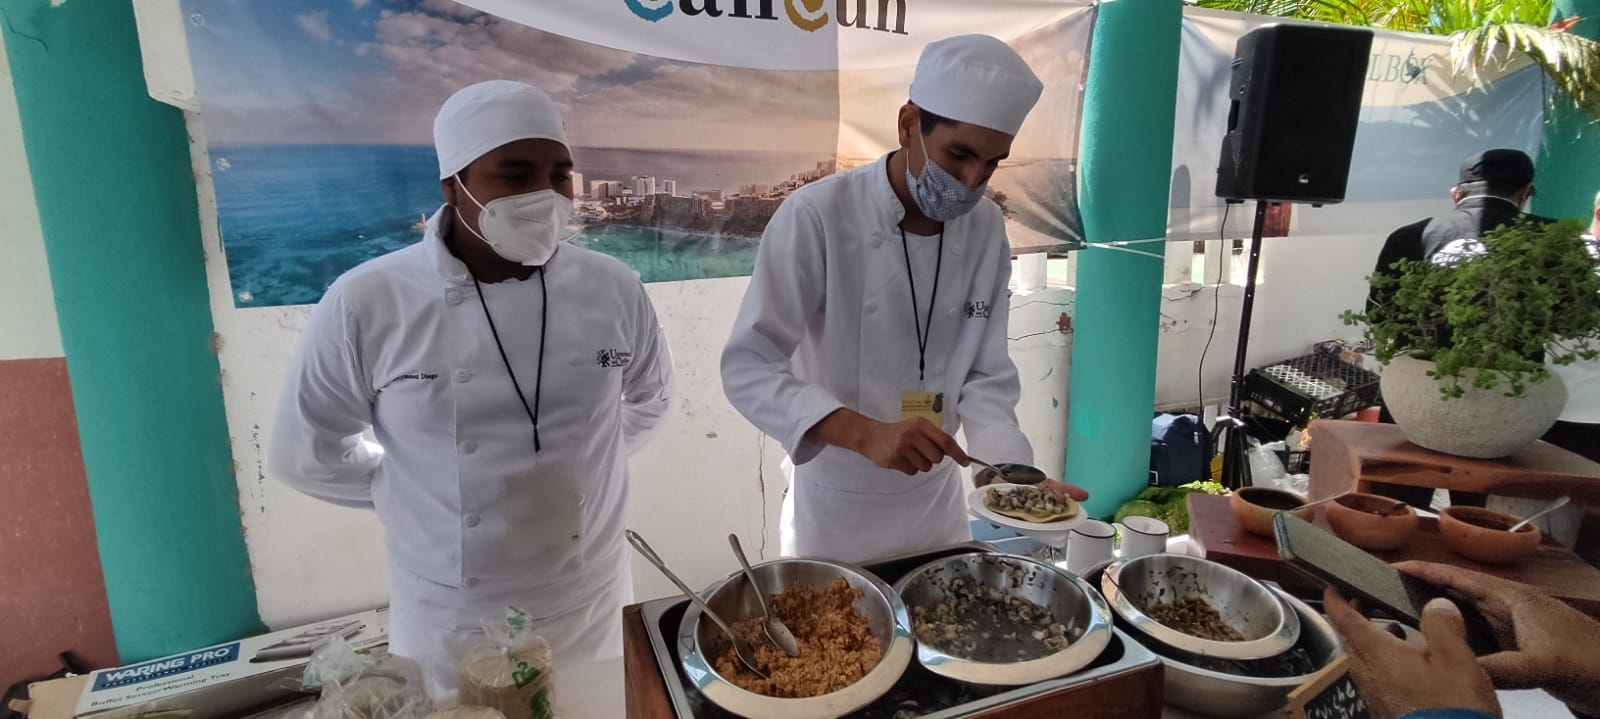 Inicia el Festival Gastronómico del Caribe Mexicano en Cancún: EN VIVO